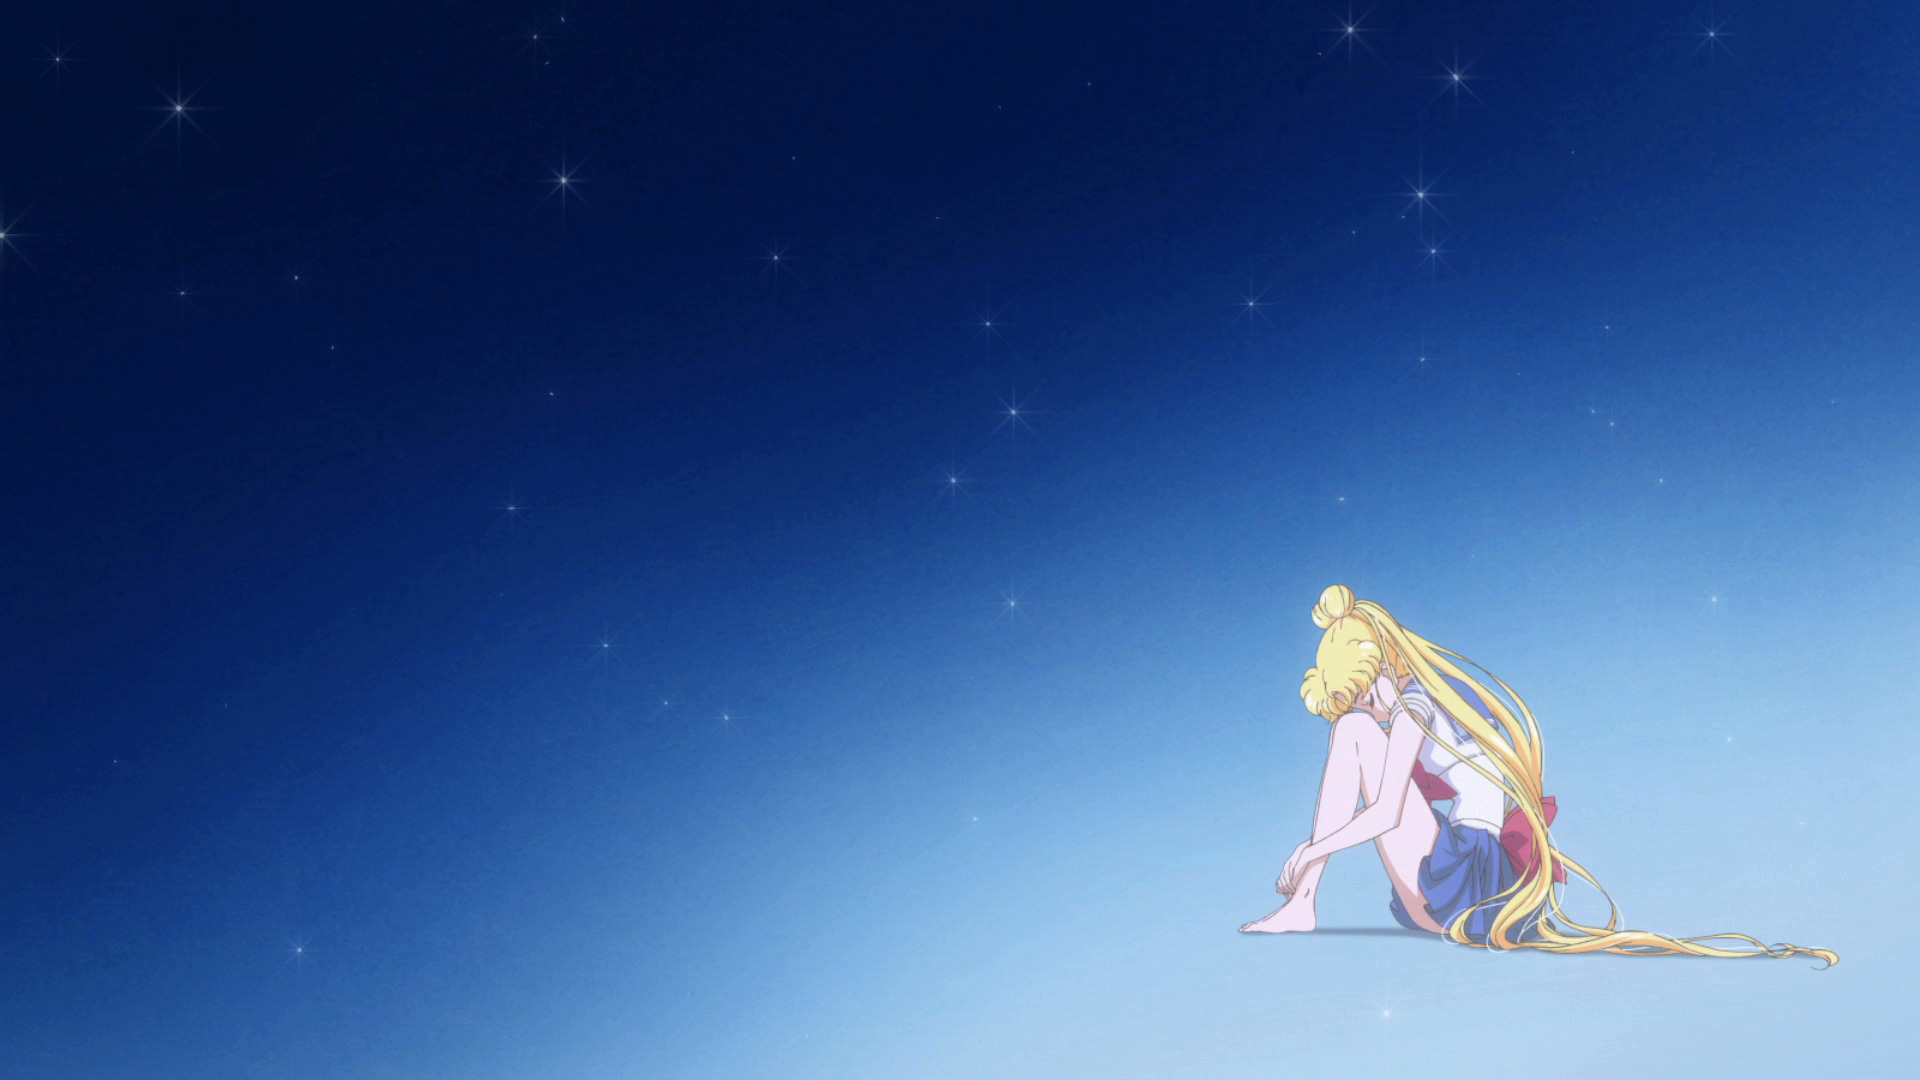 Stream Sailor Moon Crystal Season 3 OP - Opening Full version by Elise